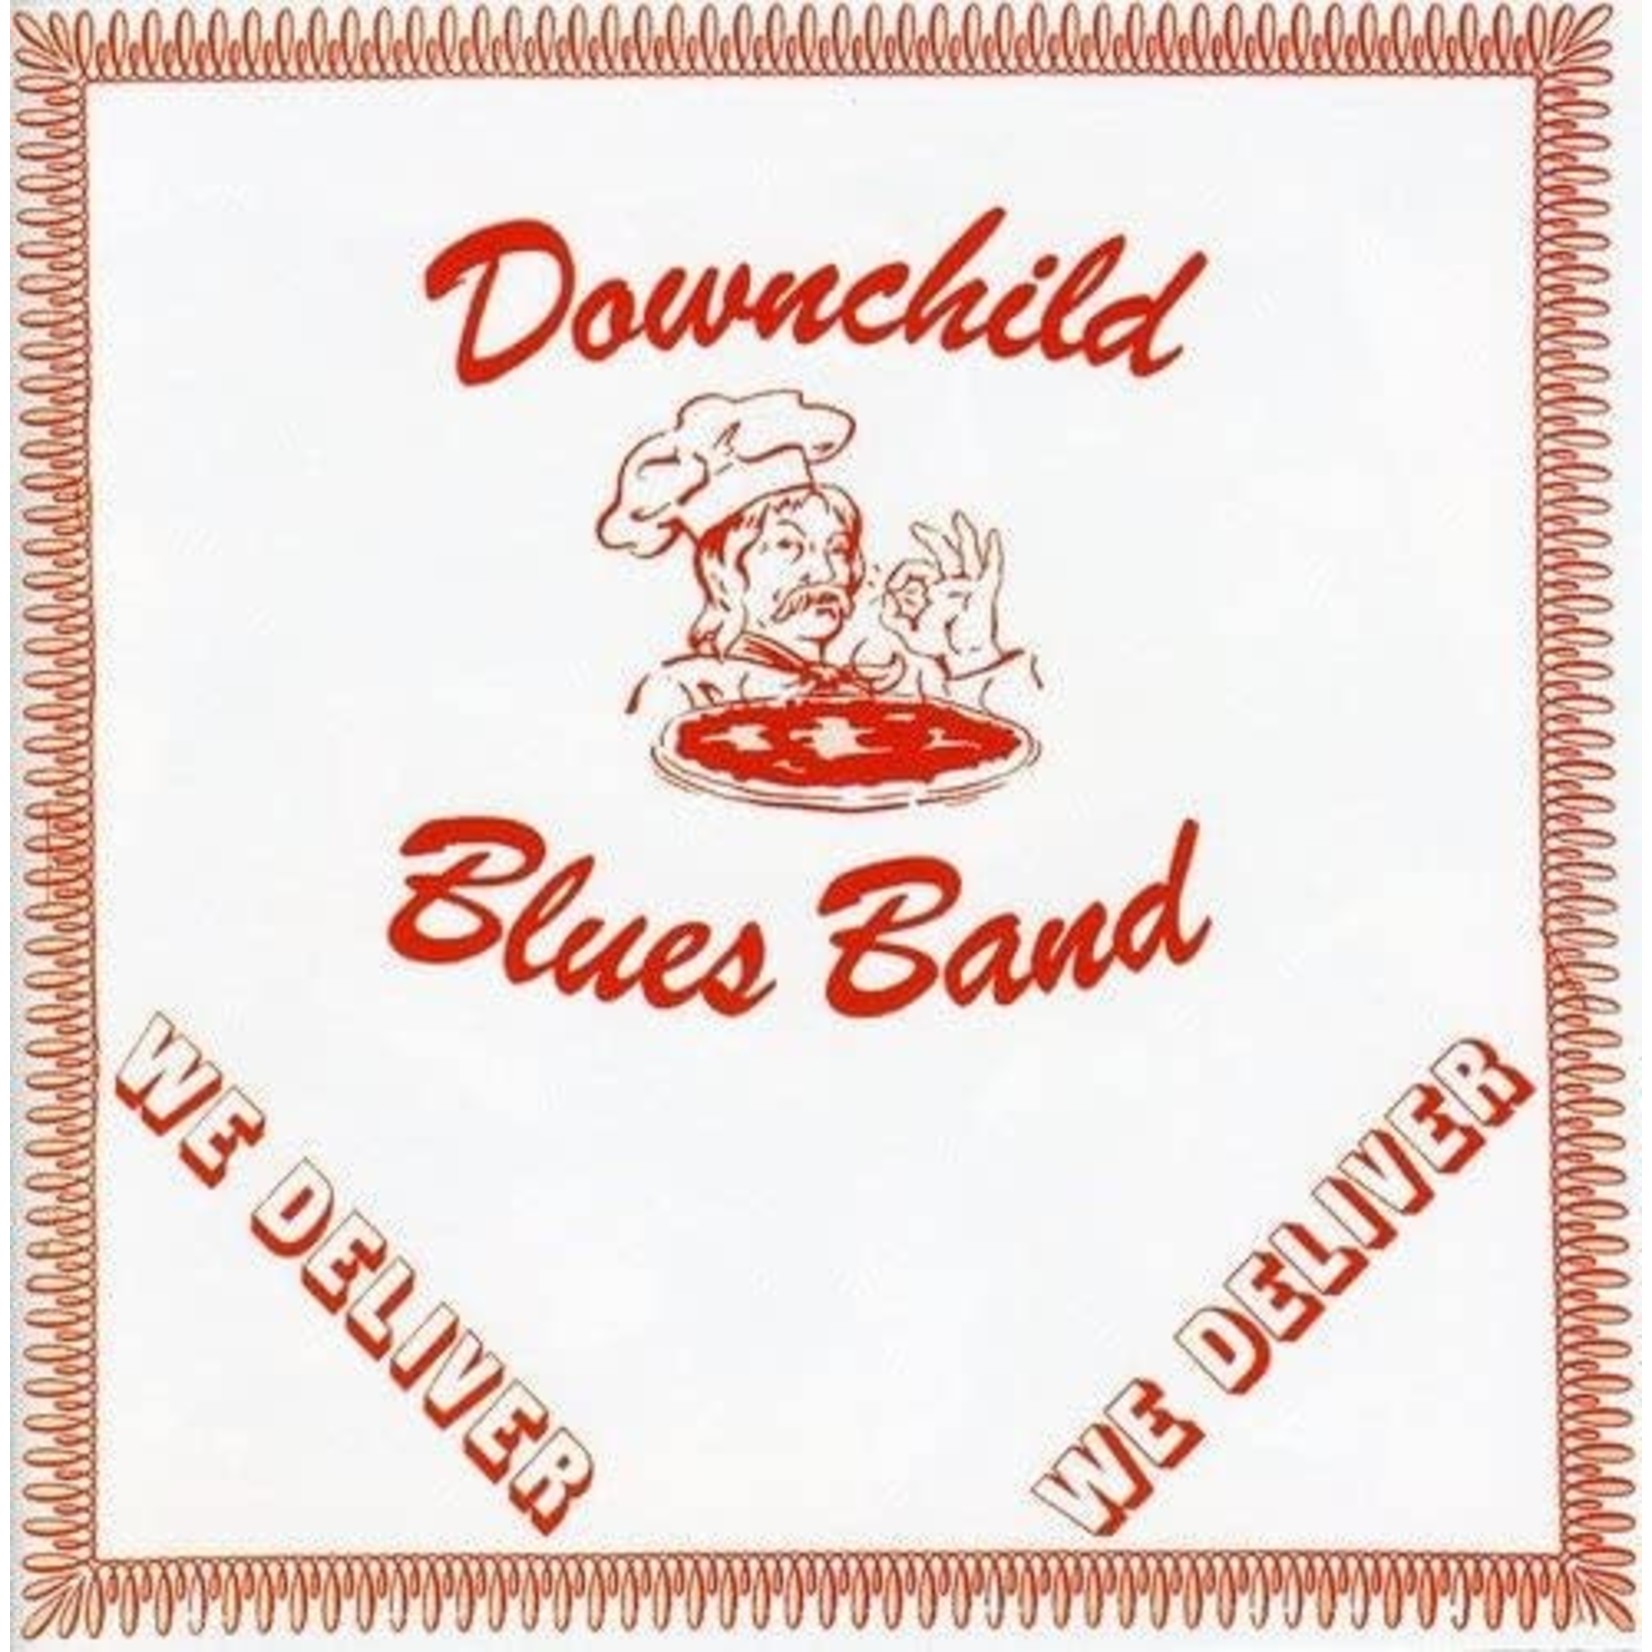 Downchild Blues Band - We Deliver [CD]